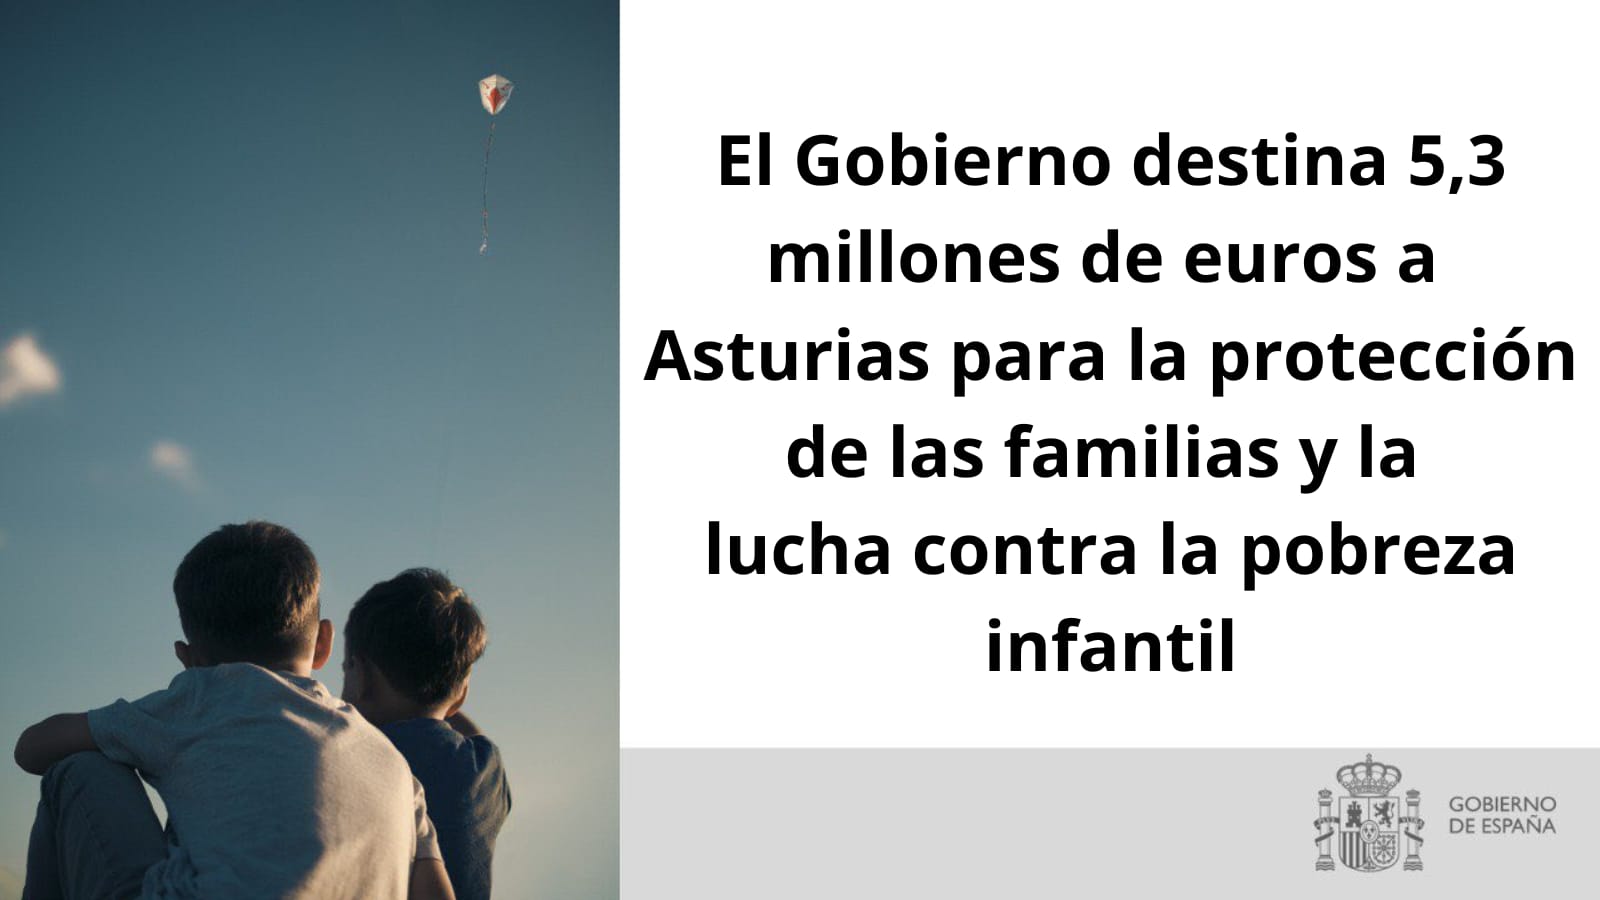 El Gobierno destina 5,3 millones de euros a Asturias para la protección de las familias y la lucha contra la pobreza infantil